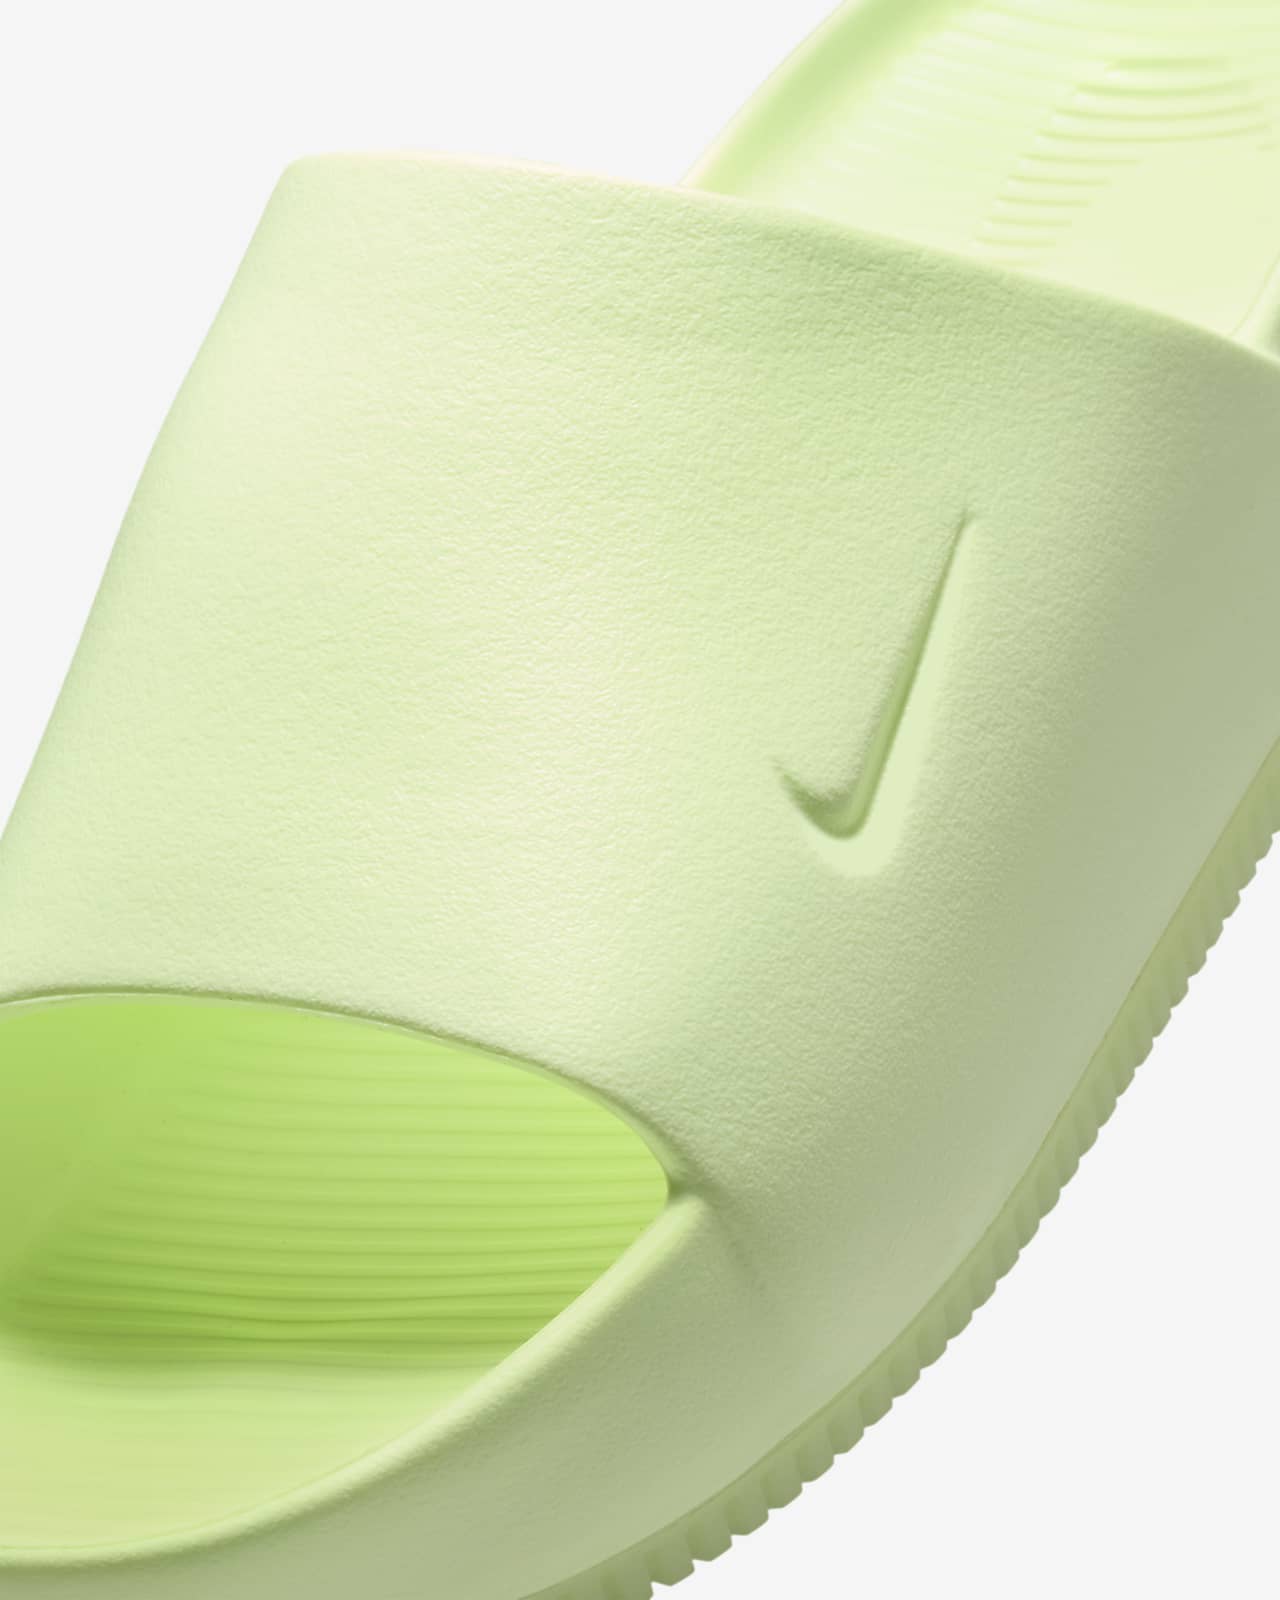 Nike Calm Women's Slides